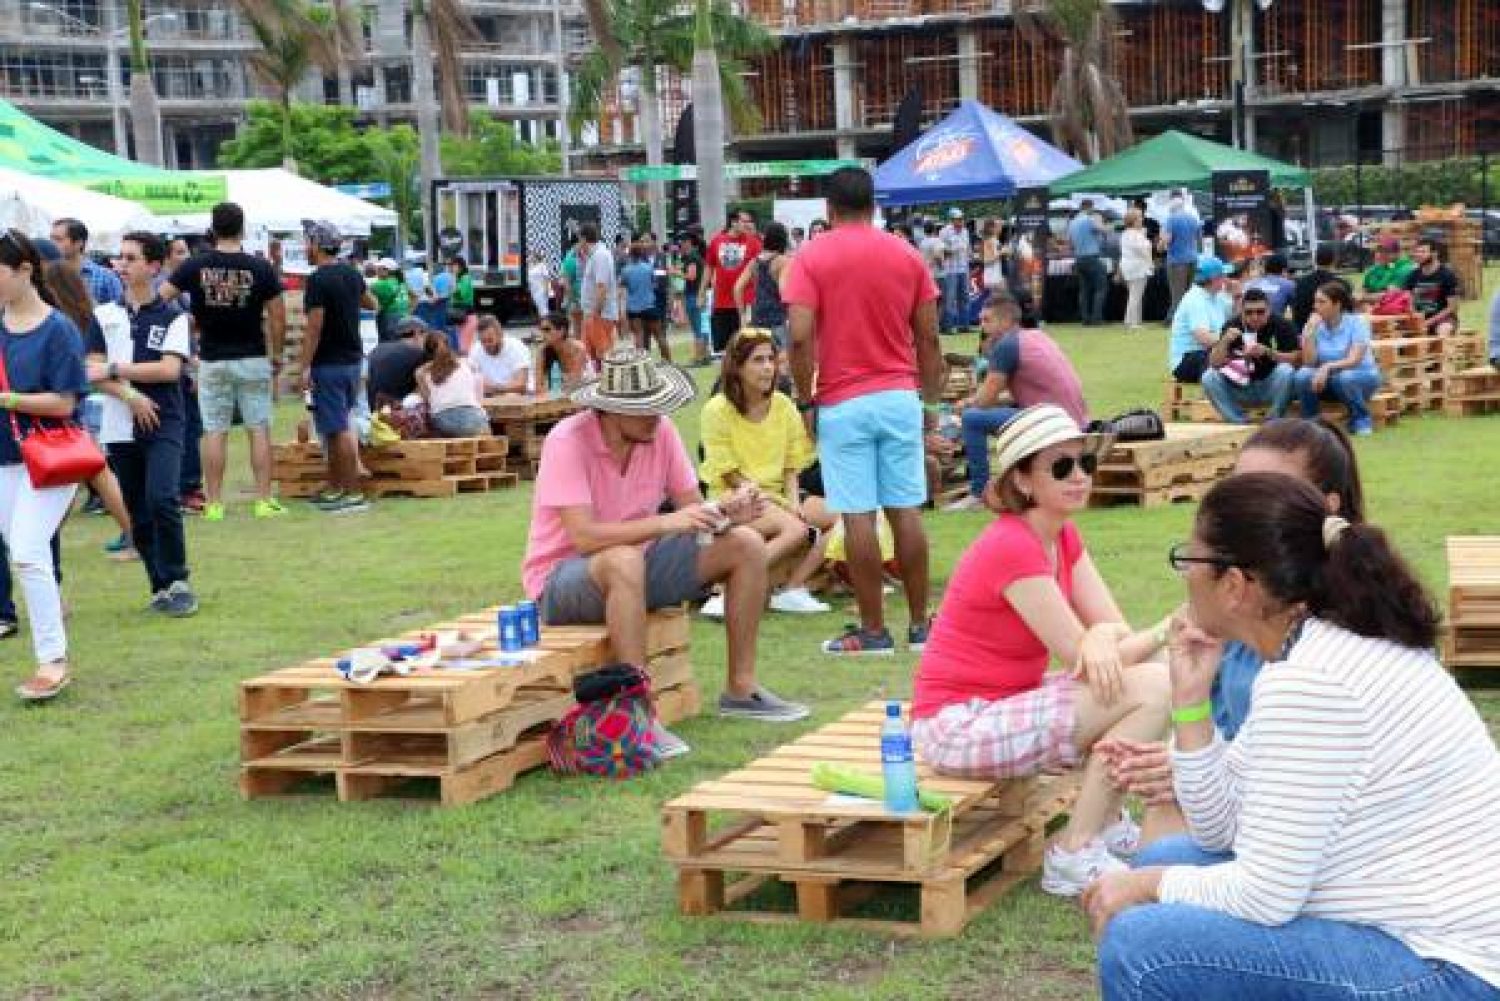 Basura Cero y Costa Fest abren la Semana del Reciclaje